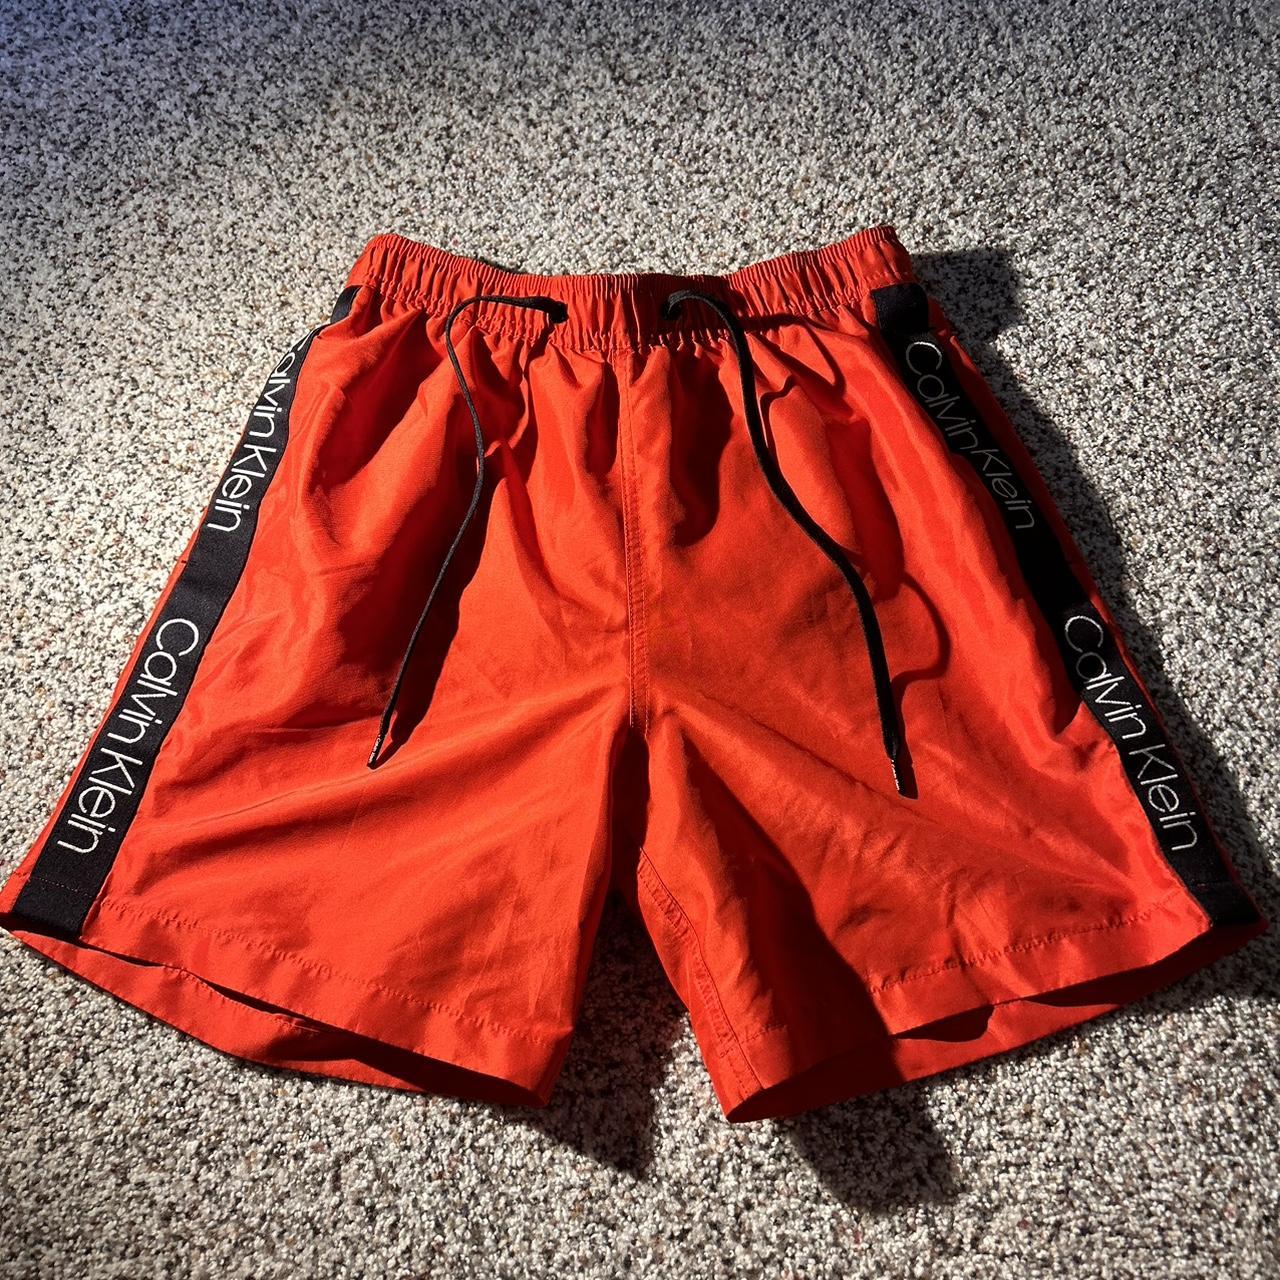 Calvin Klein Men's Orange and Red Shorts | Depop